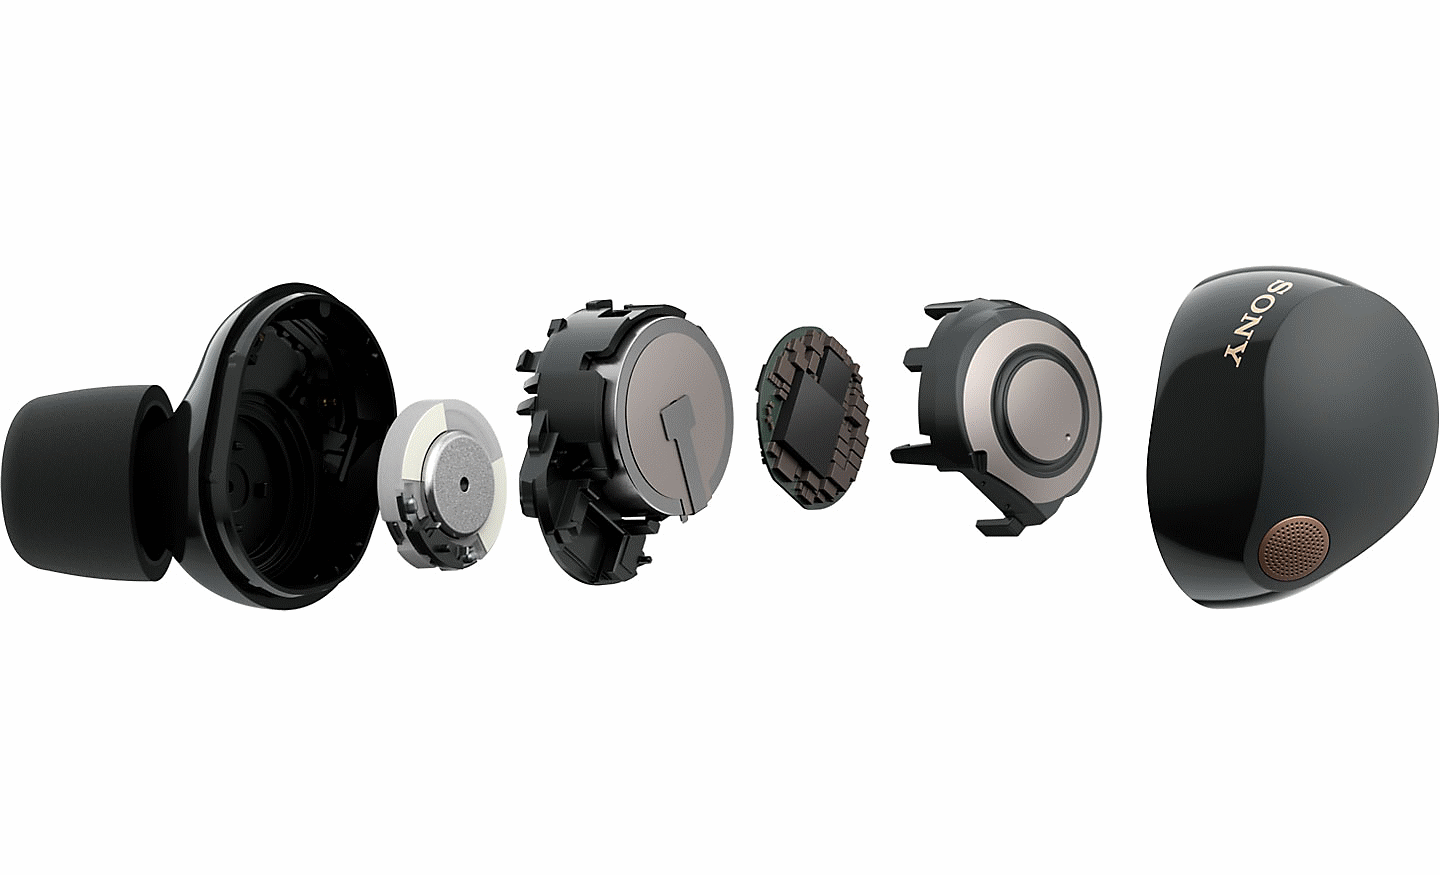 Slika slušalica WF-1000XM5 s unutarnjim komponentama koje su odvojene u pojedinačne dijelove poredane jedan do drugog